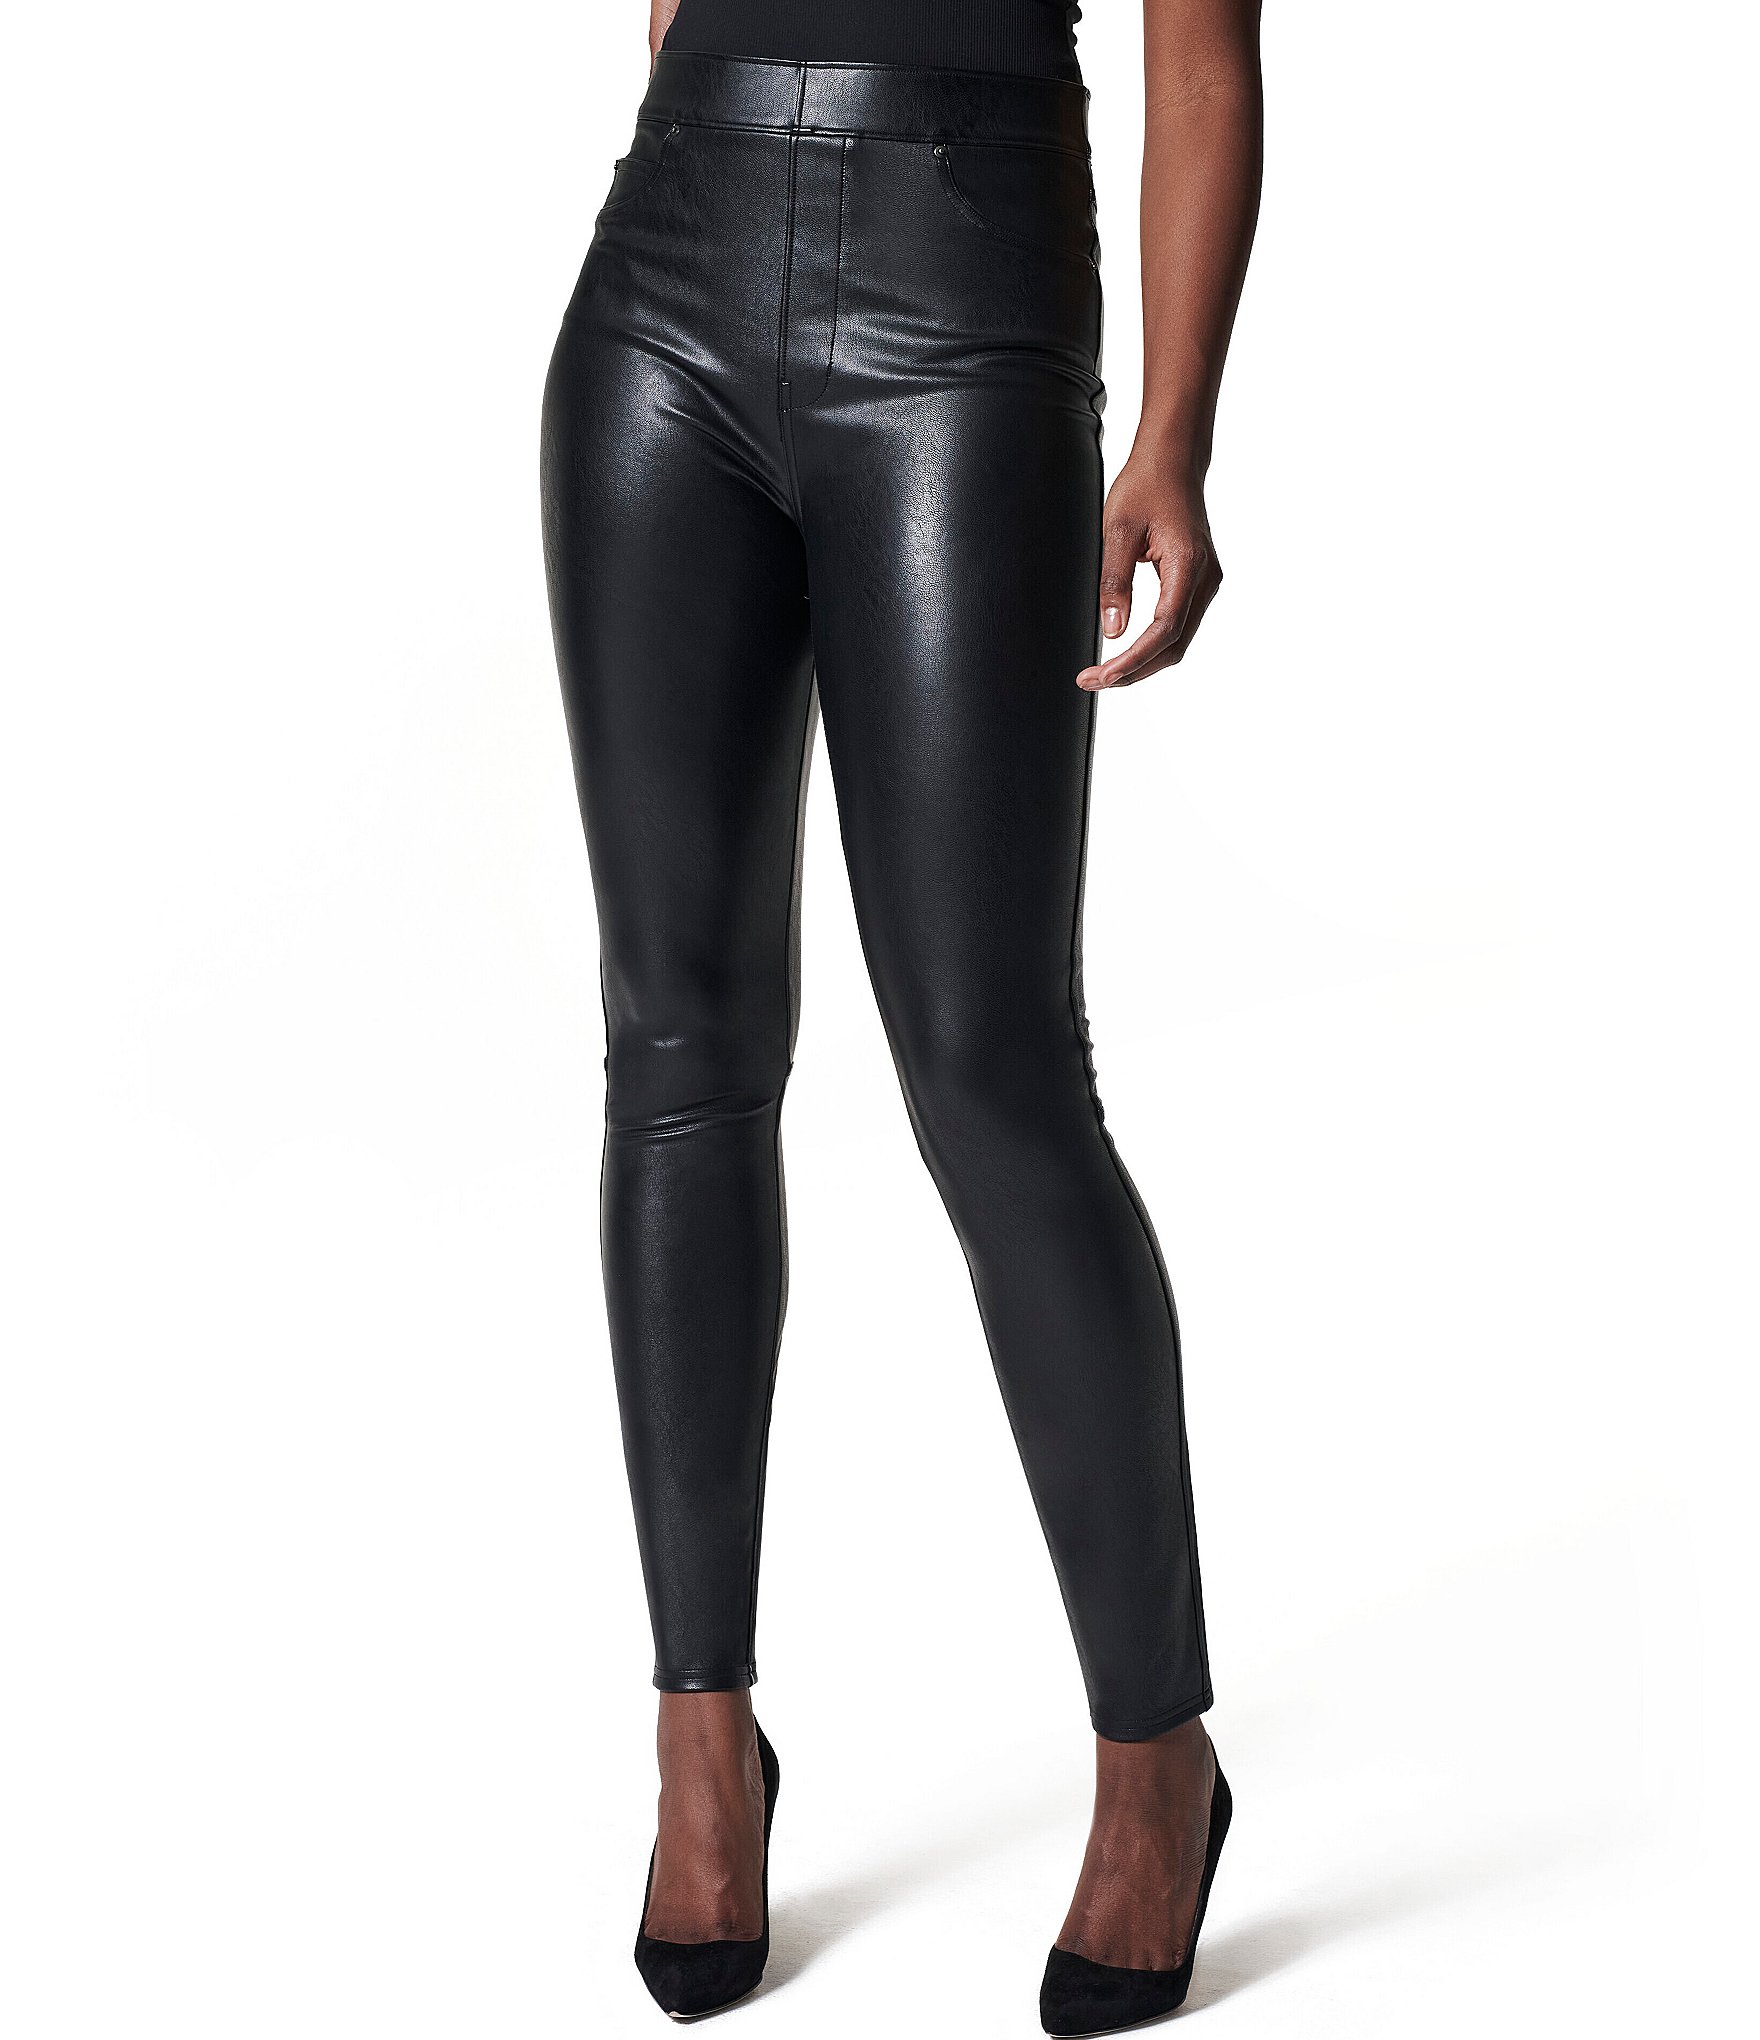 SPANX, Pants & Jumpsuits, Spanx Faux Leather Pebbled Leggings Black High  Rise Compression Large L Sculpt